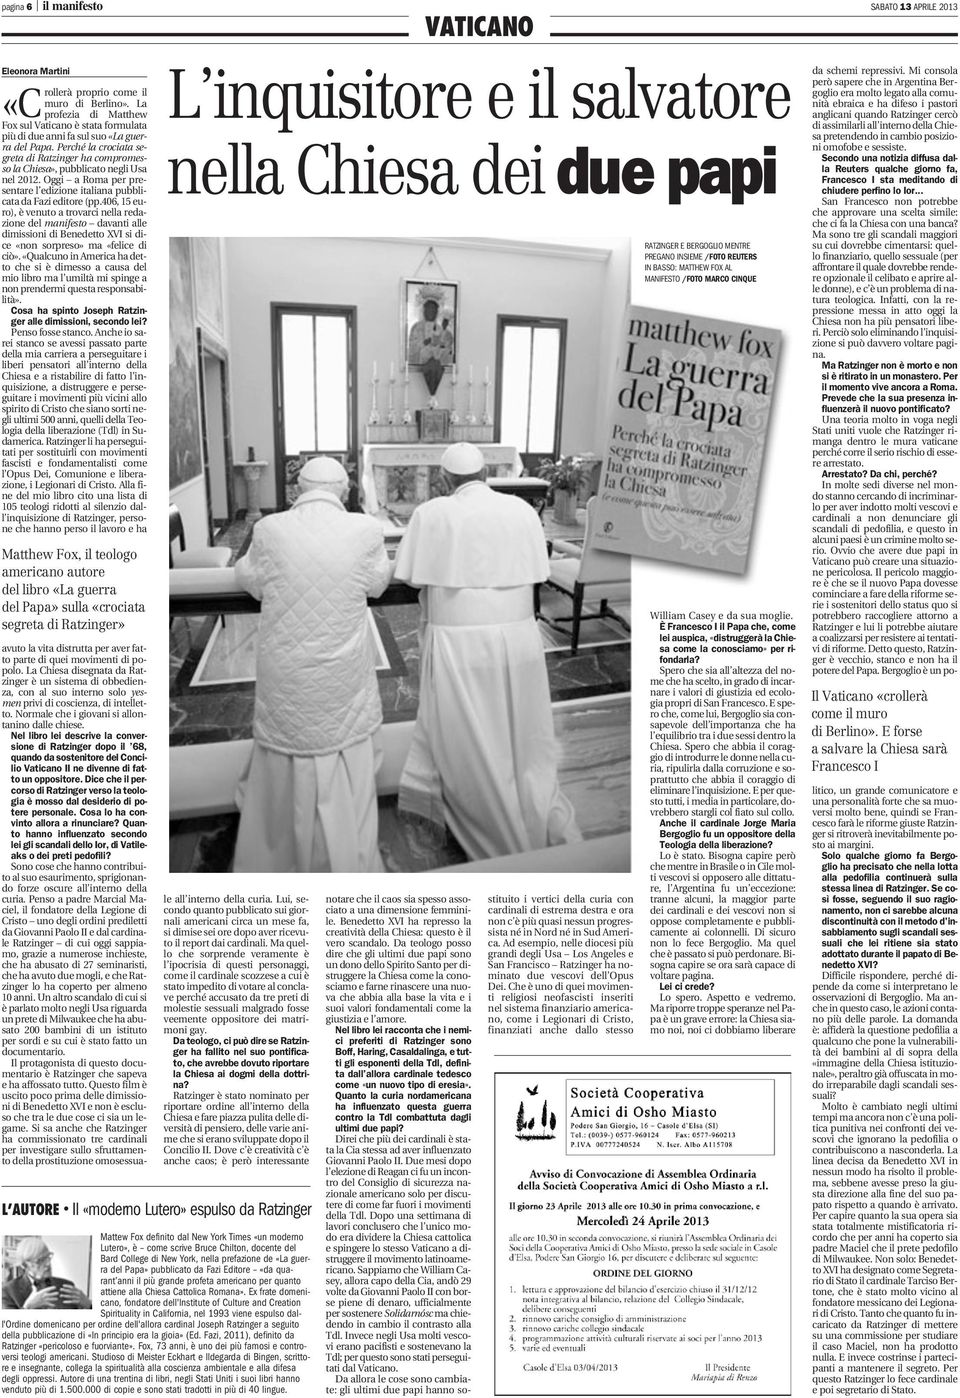 Perché la crociata segreta di Ratzinger ha compromessola Chiesa», pubblicato negli Usa nel 2012. Oggi a Roma per presentare l edizione italiana pubblicata da Fazi editore (pp.